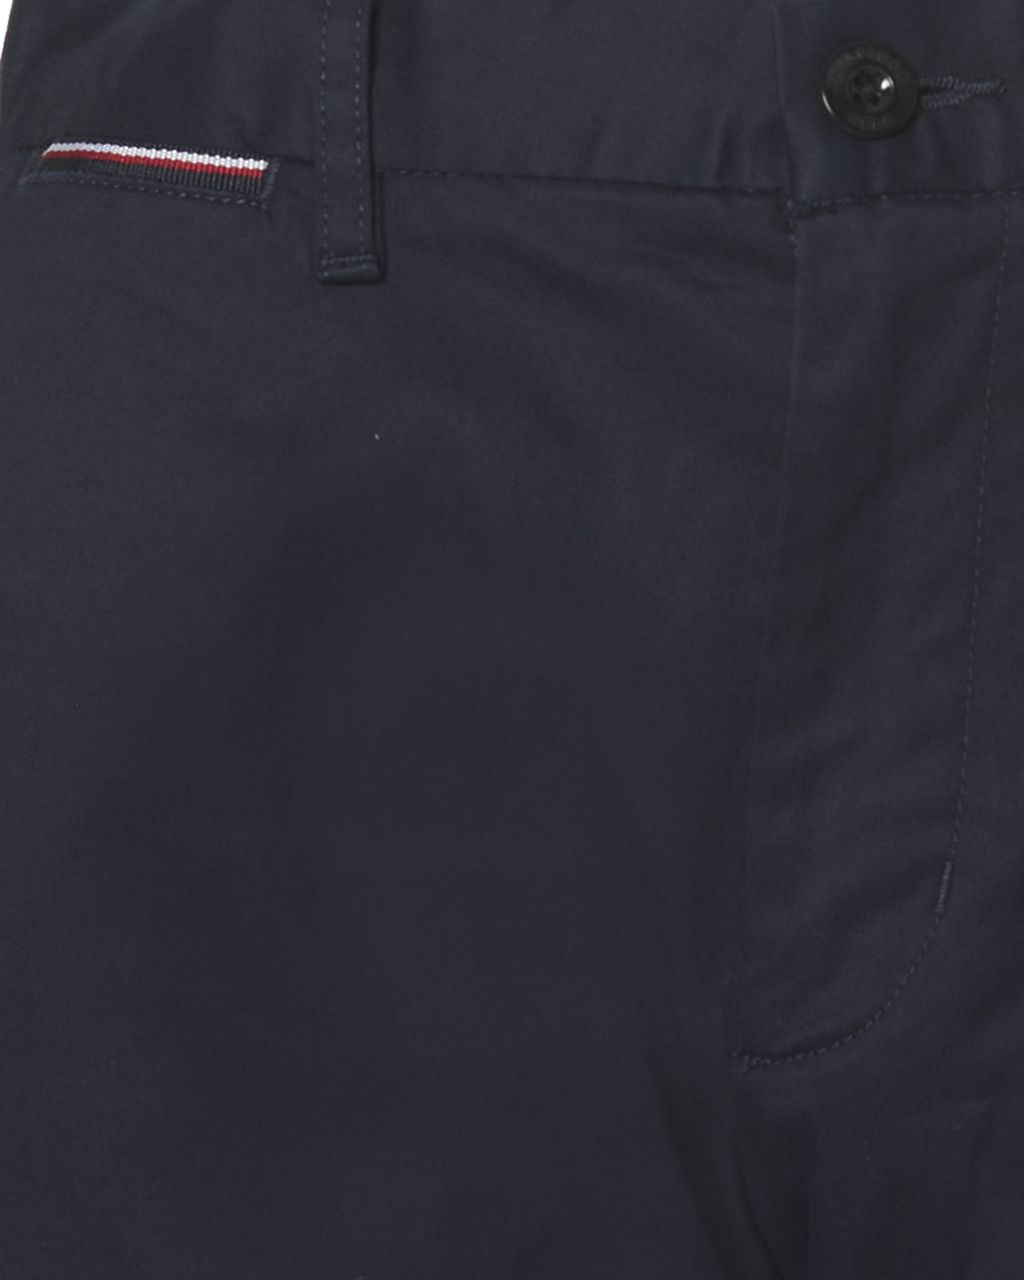 Tommy Hilfiger Menswear Short Donker blauw 069956-001-31